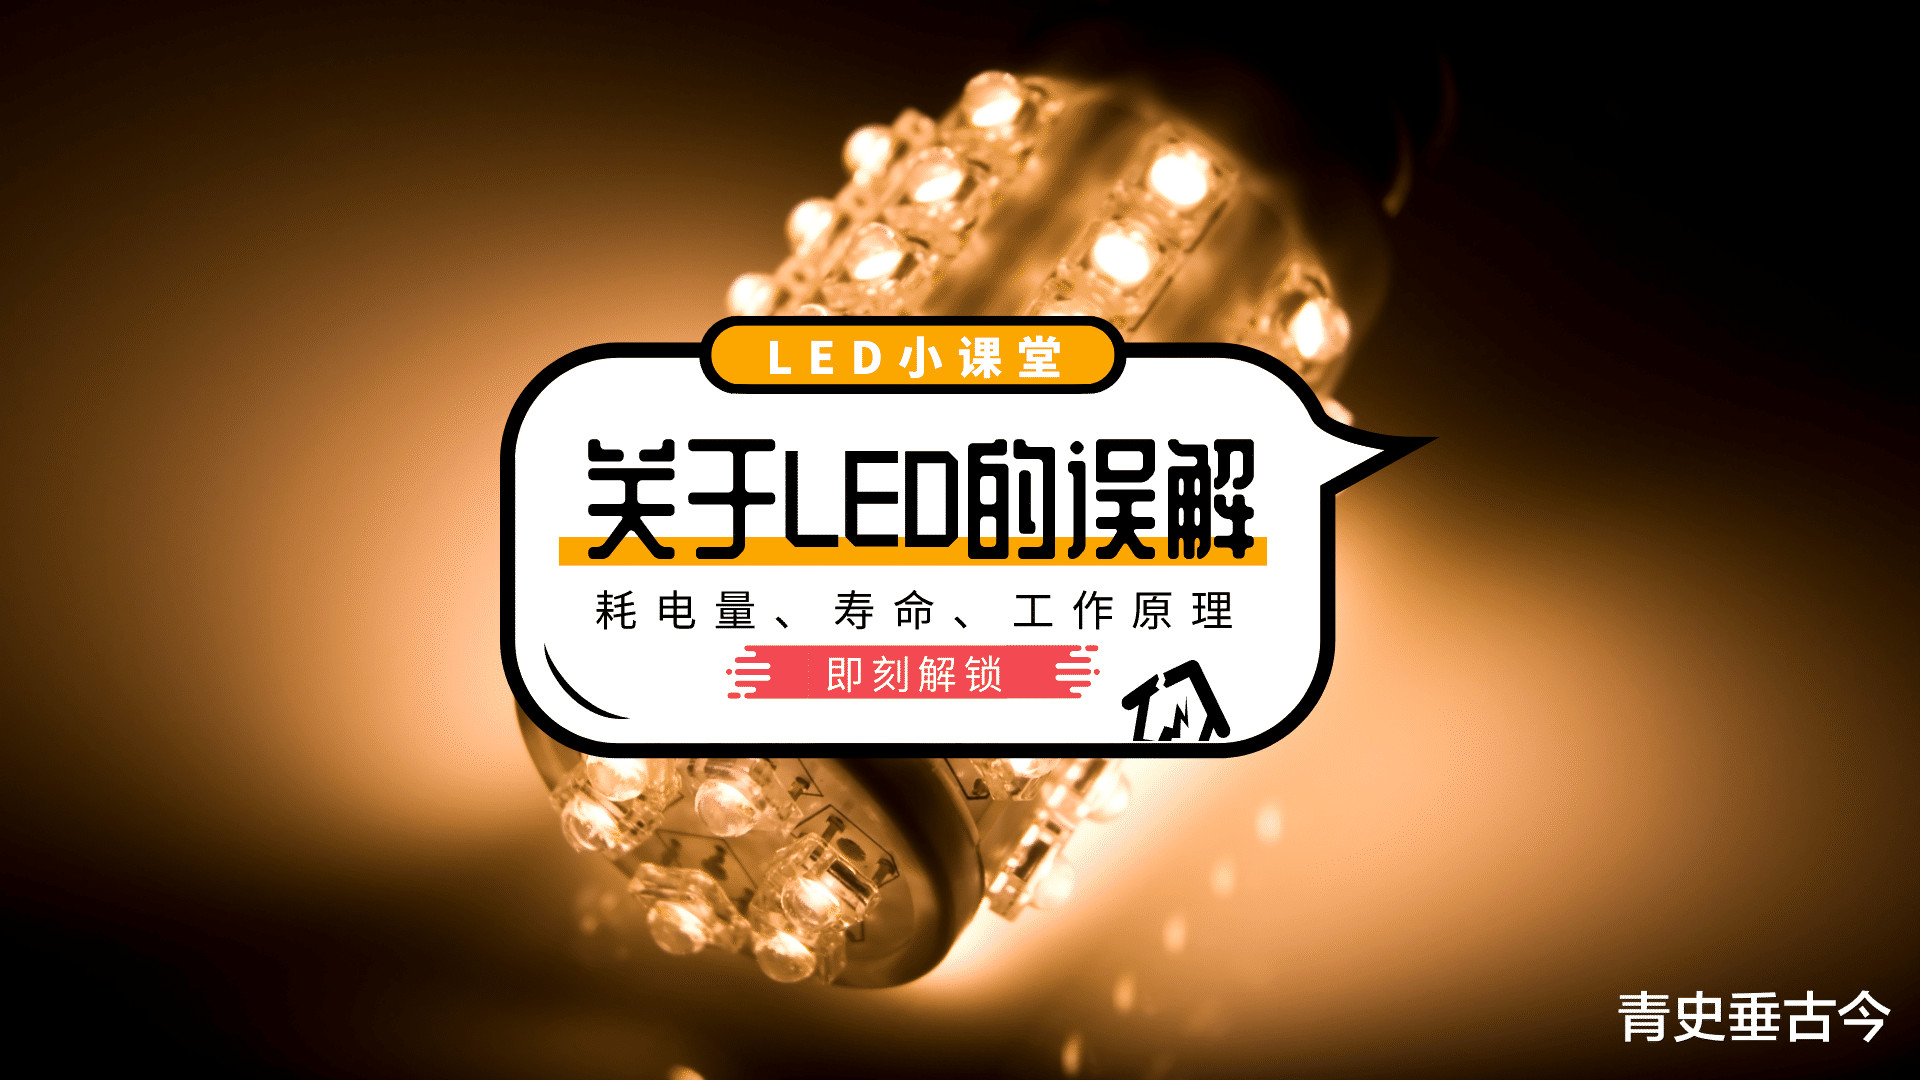 led灯|LED灯“寿命短还费电”，为什么商家却口口声声说它是节能产品？